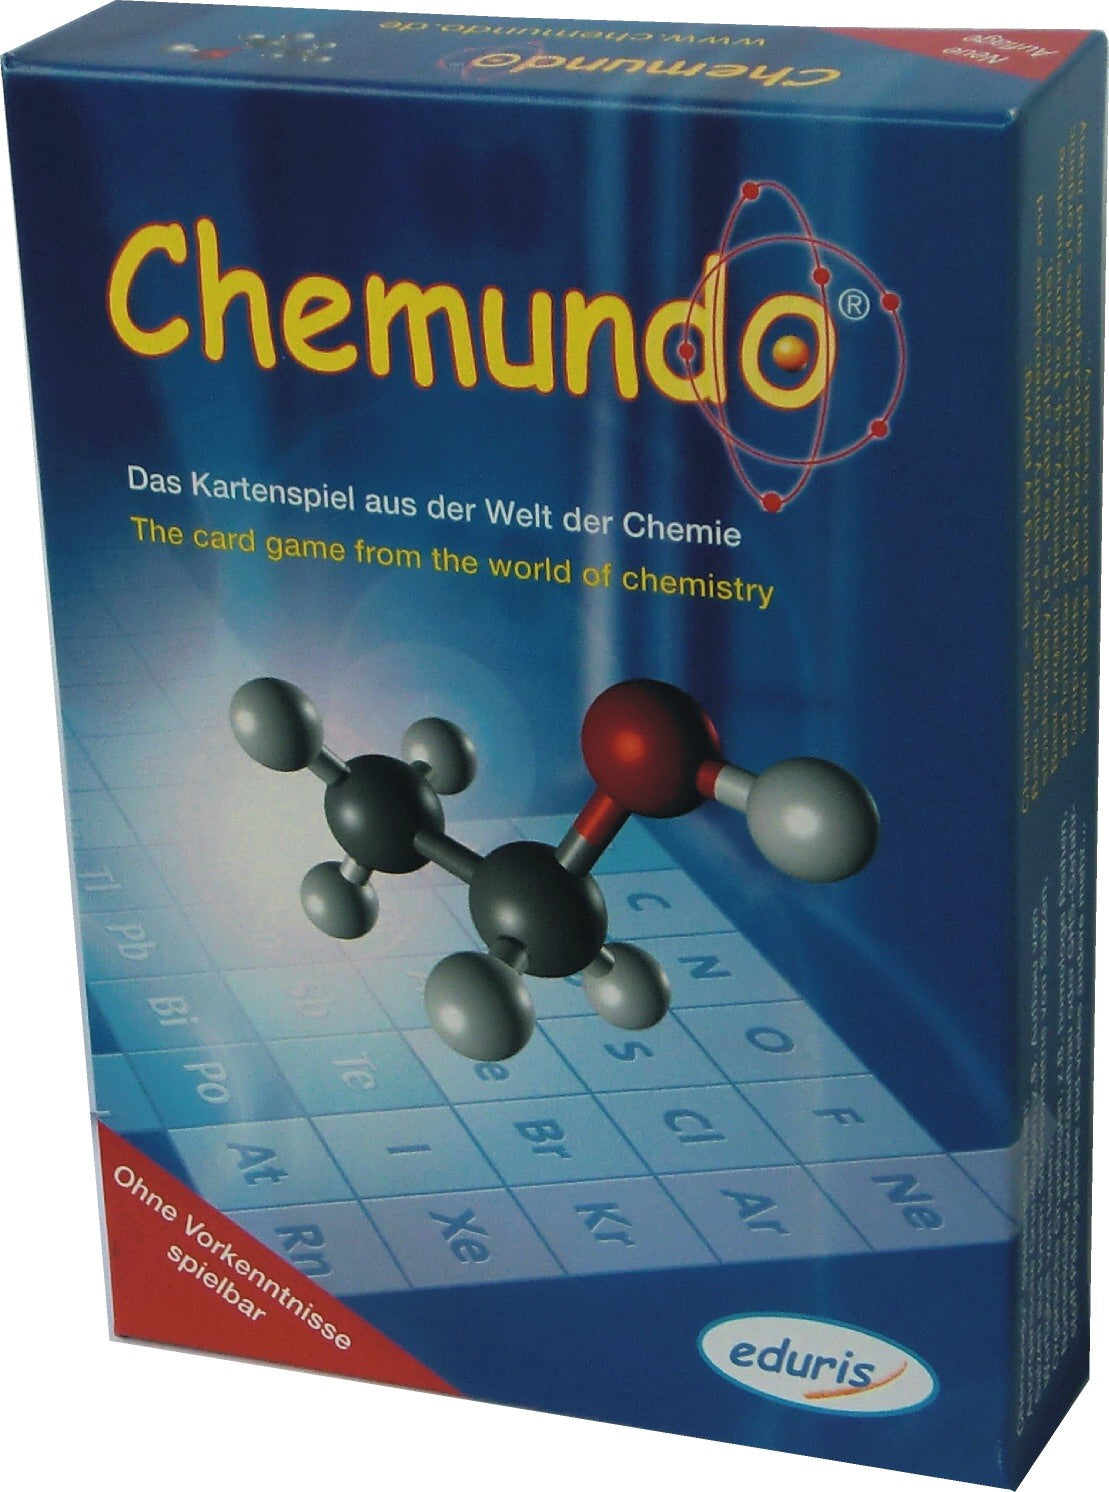 Kartenspiel Chemundo: Handelsübliche Spielkartengröße: 58 mm x 91 mm